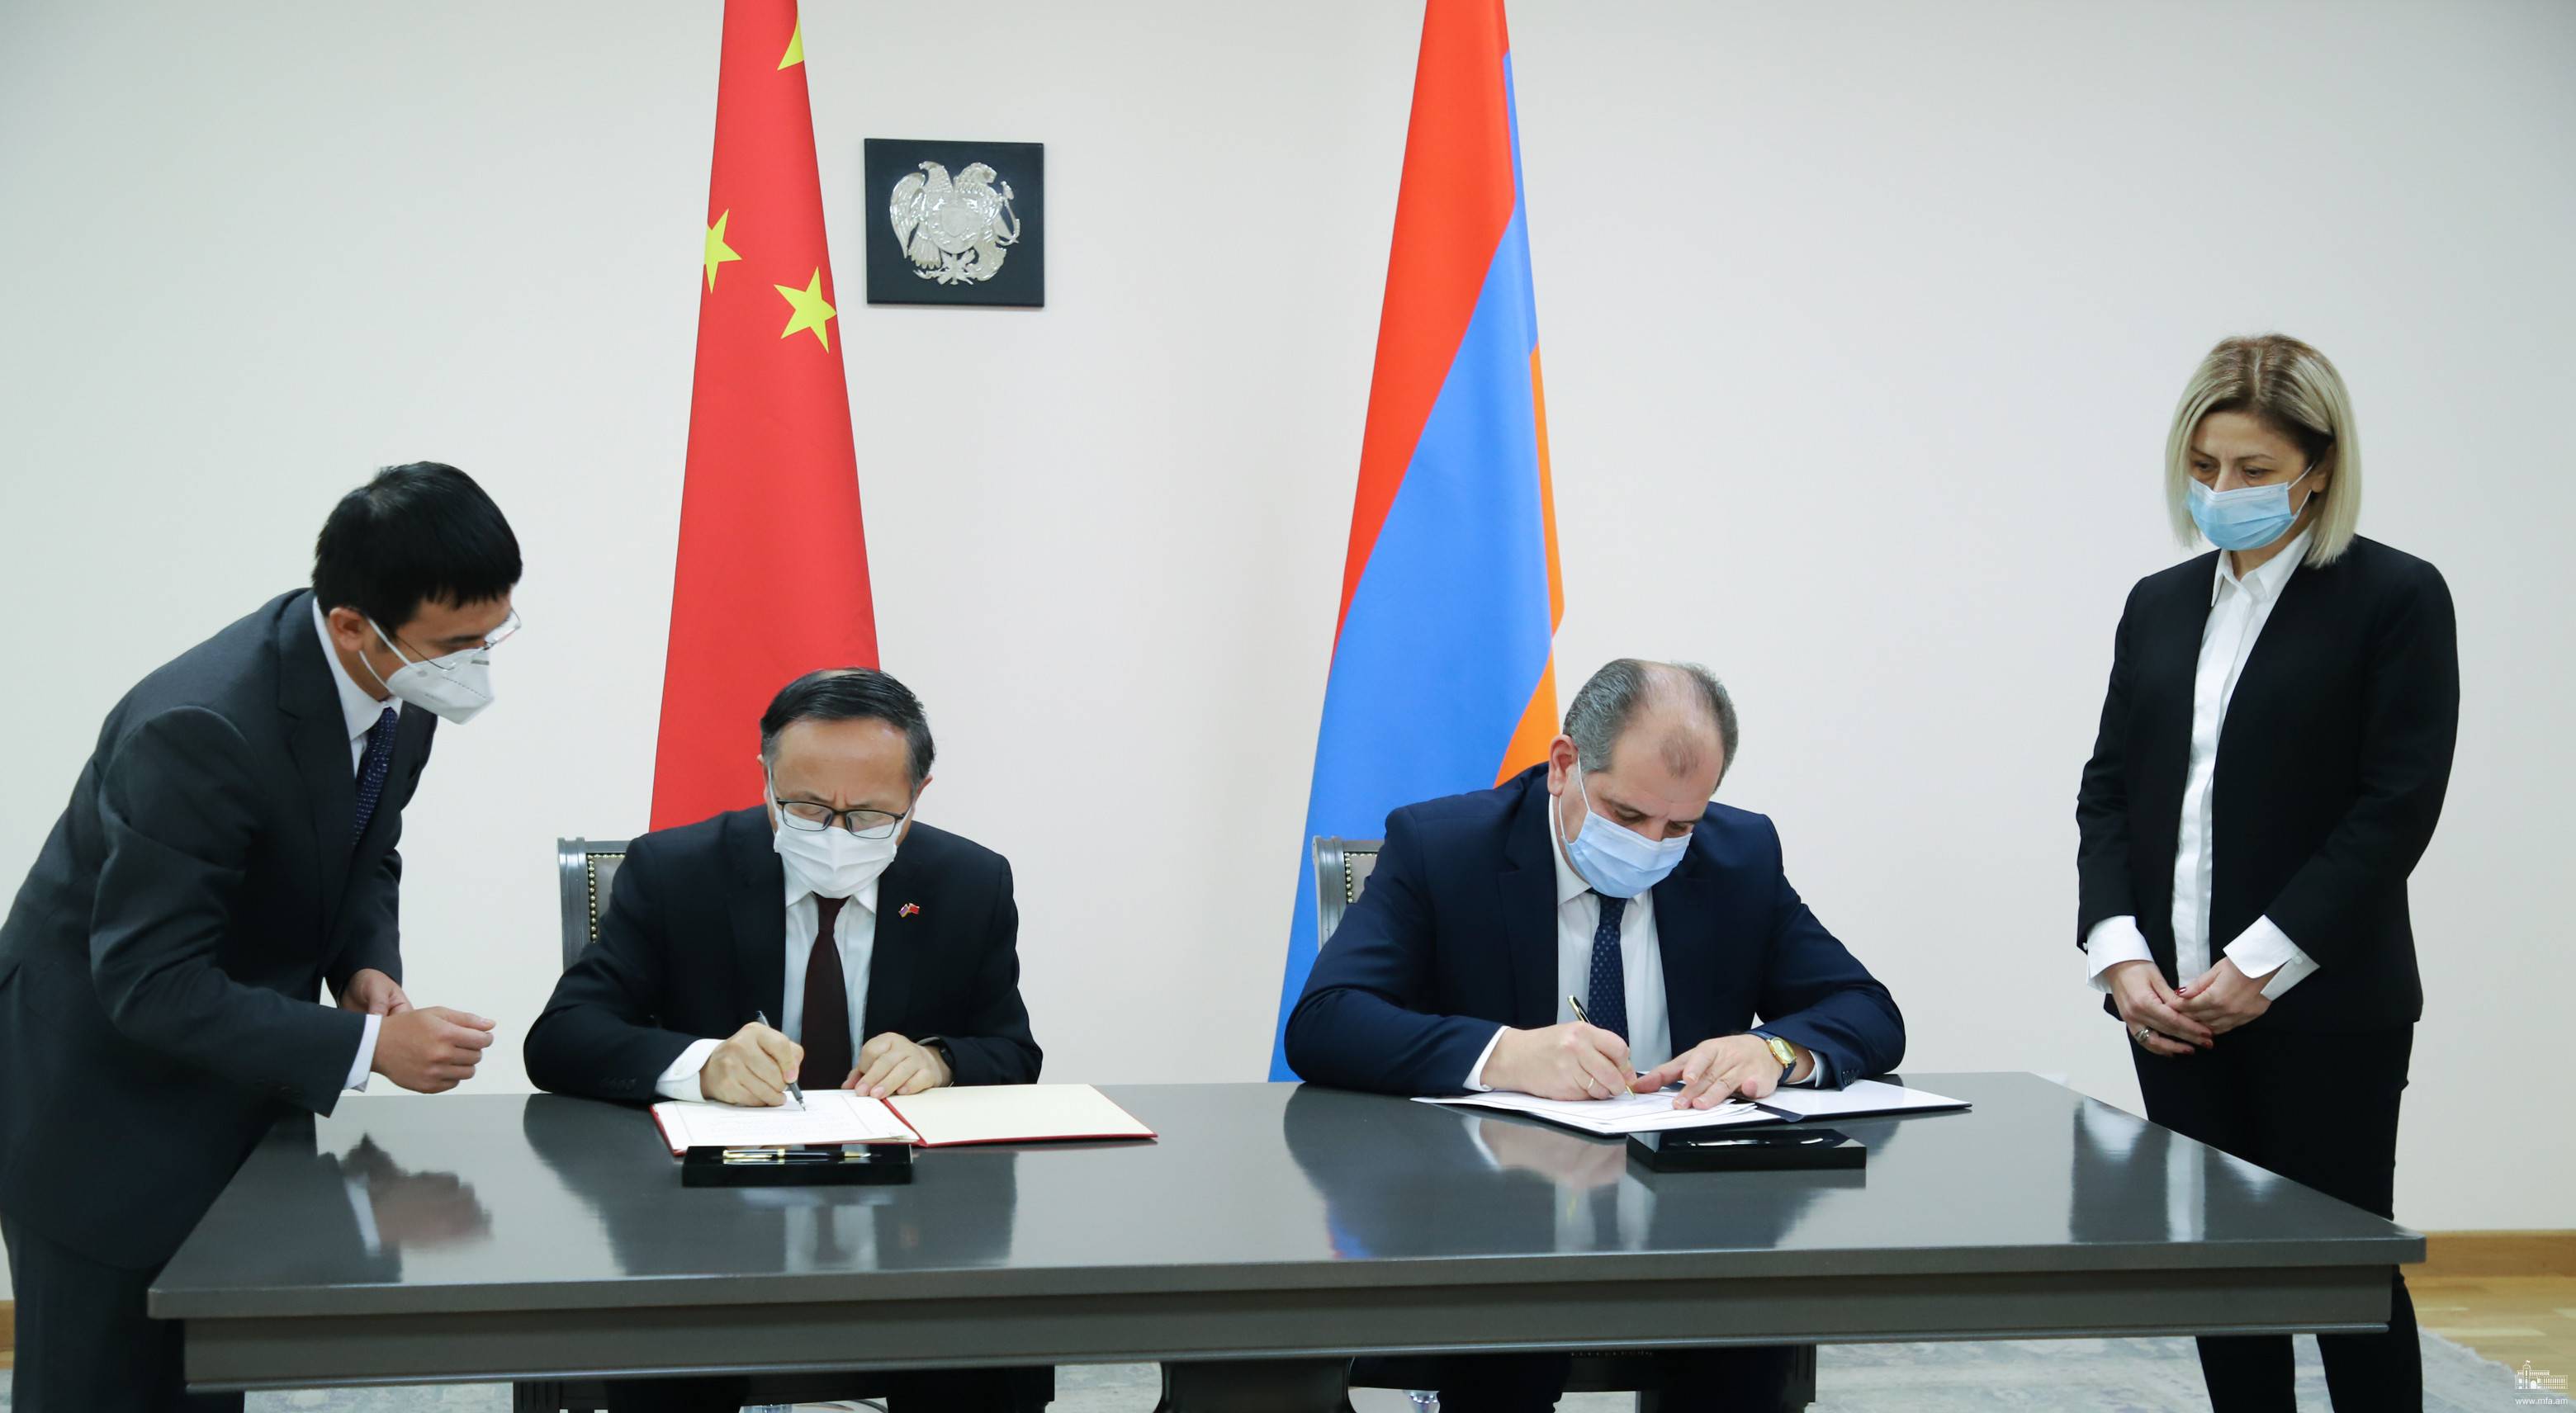 Правительства Армении и Китая подписали соглашение о технико-экономическом сотрудничестве